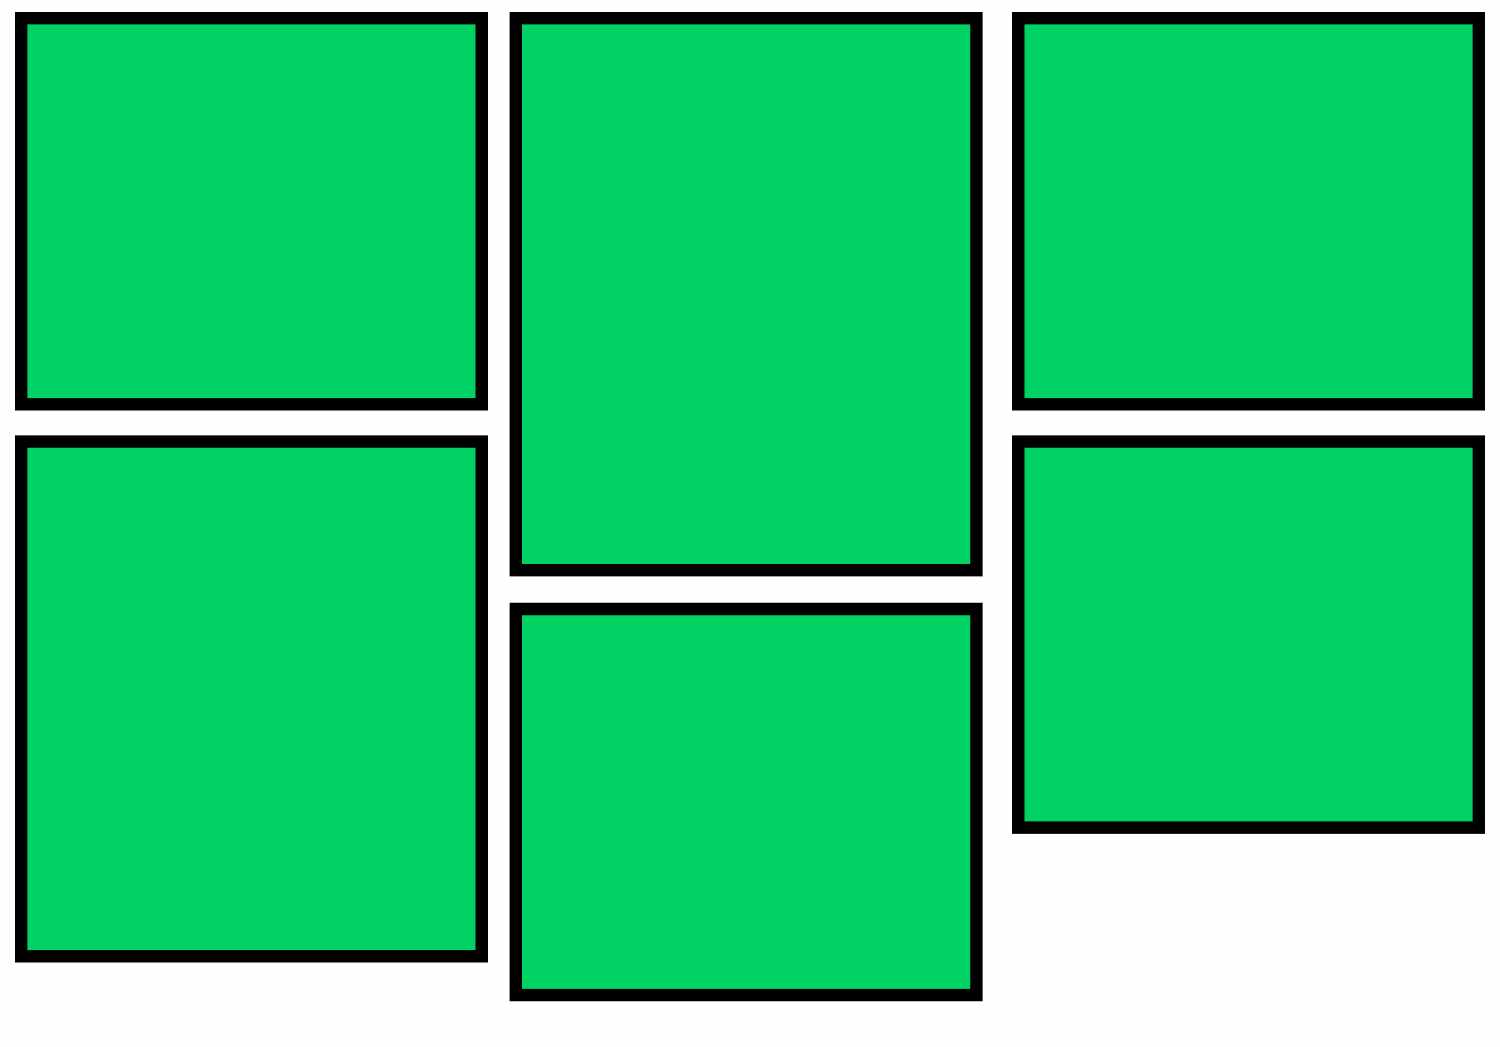 Masonry grid layout